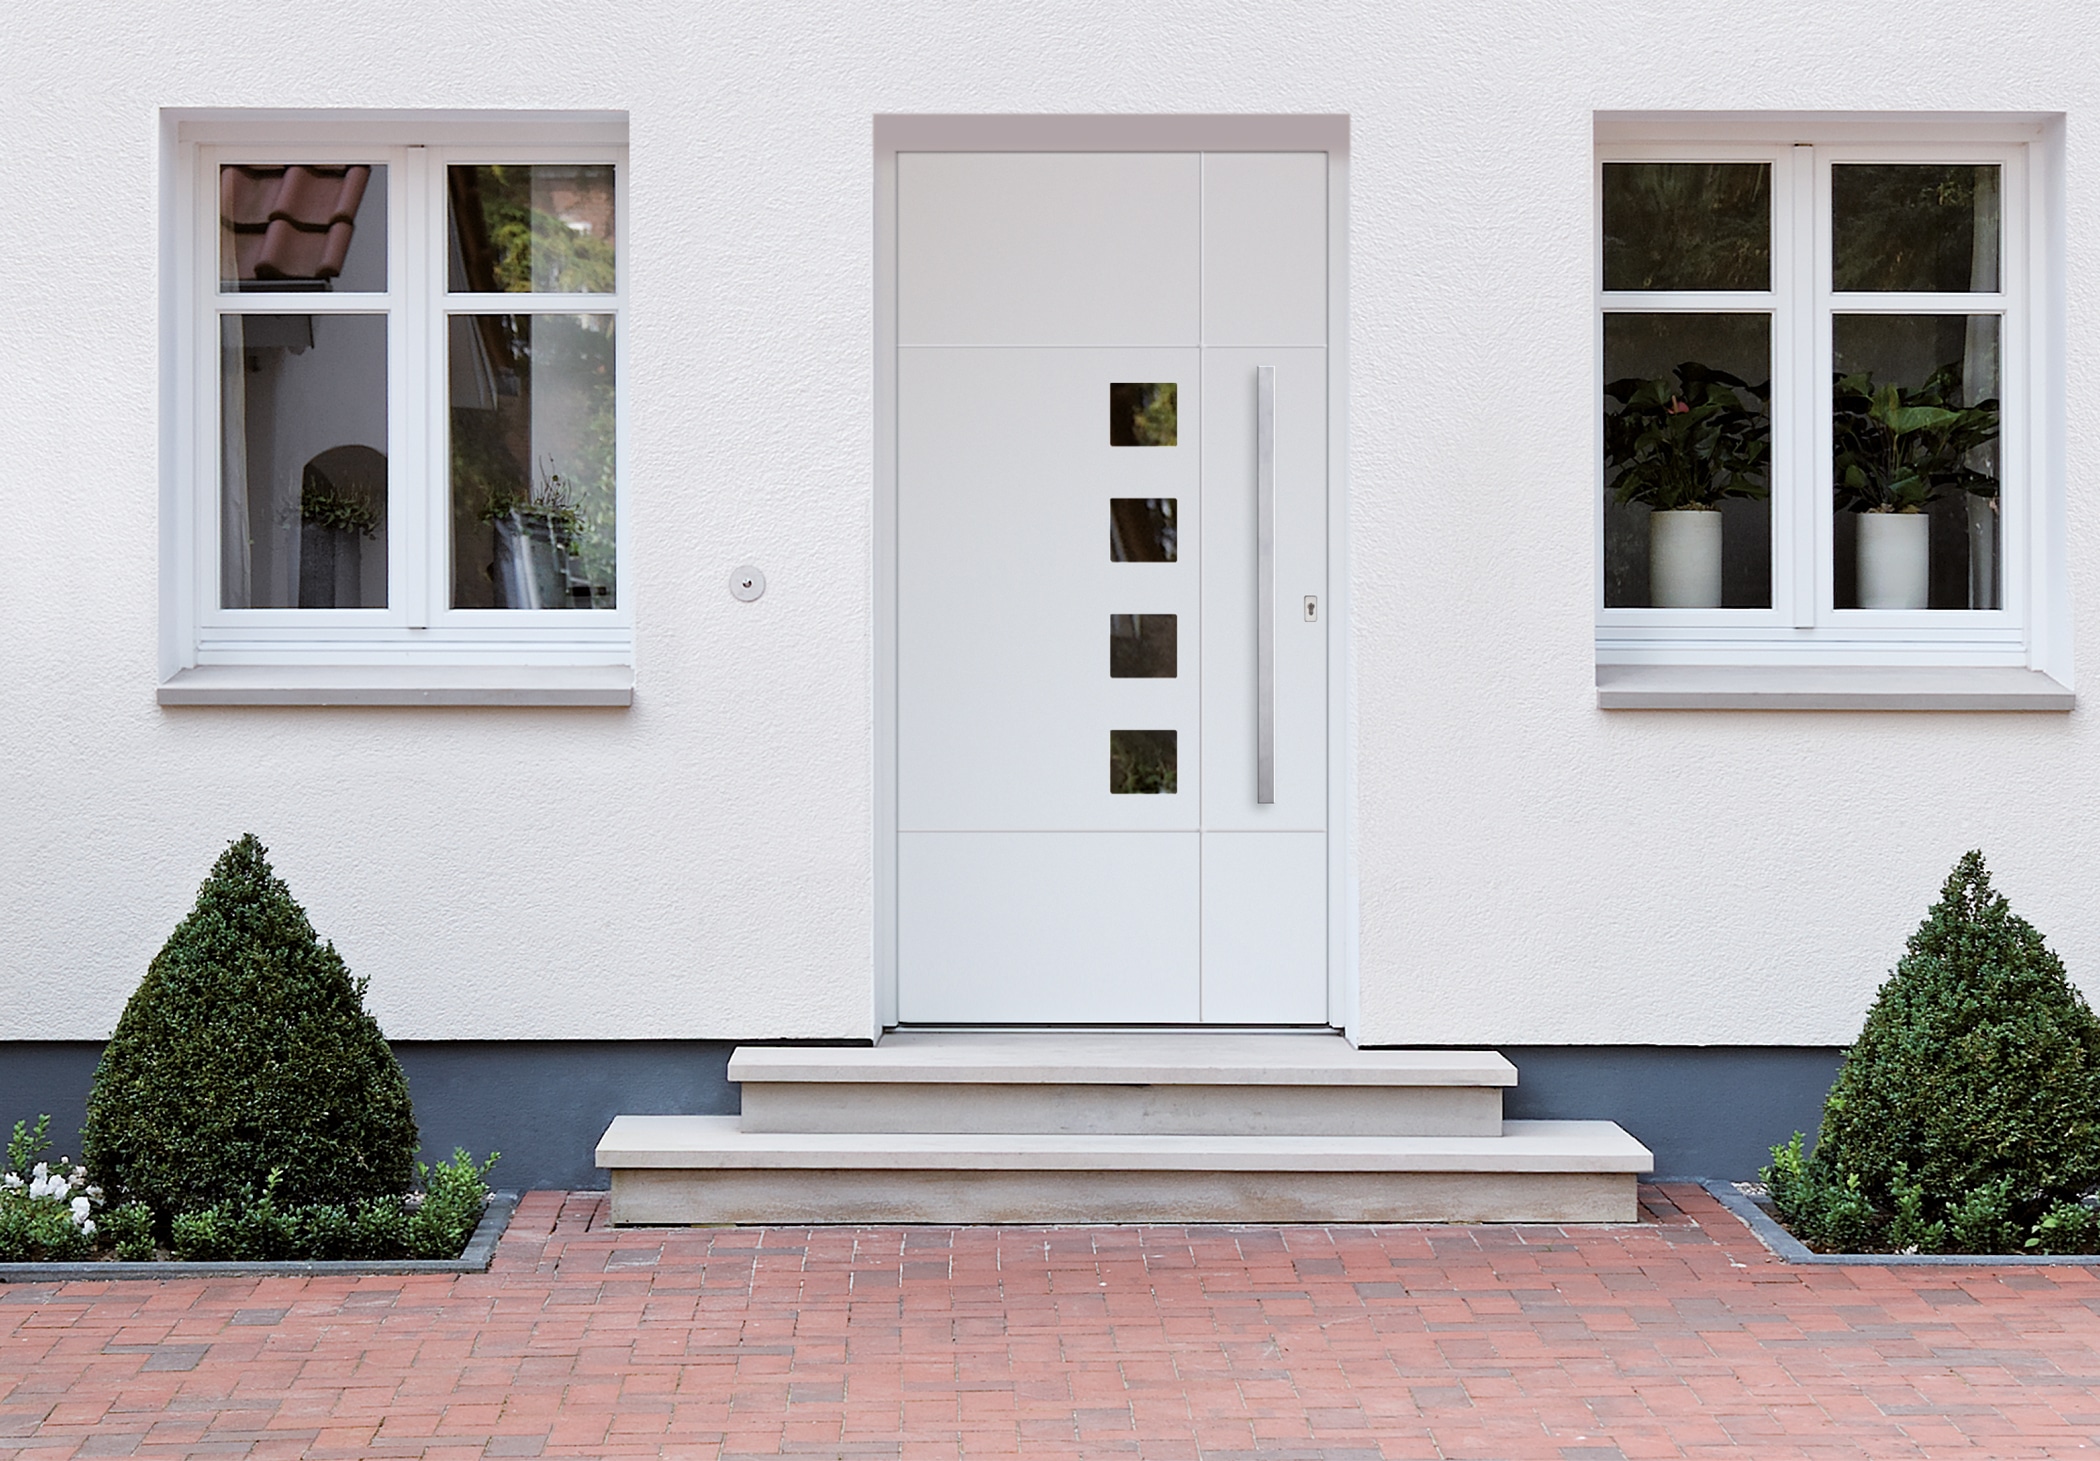 Haustür aus Aluminium nach Maß gefertigt - Projekt in Oberösterreich